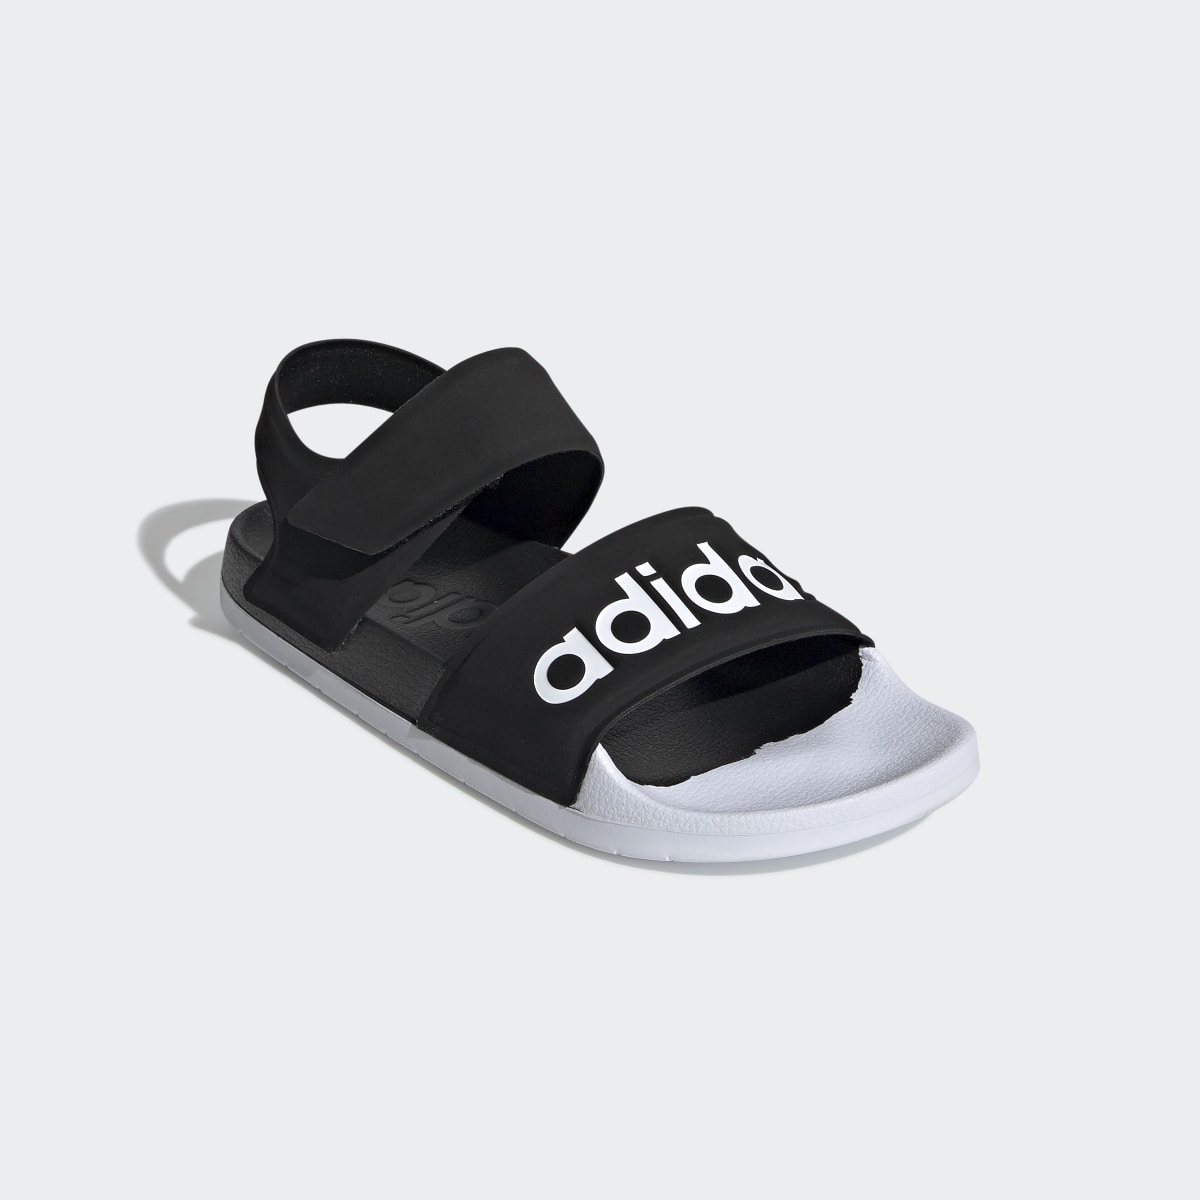 Adidas Adilette Sandals. 5